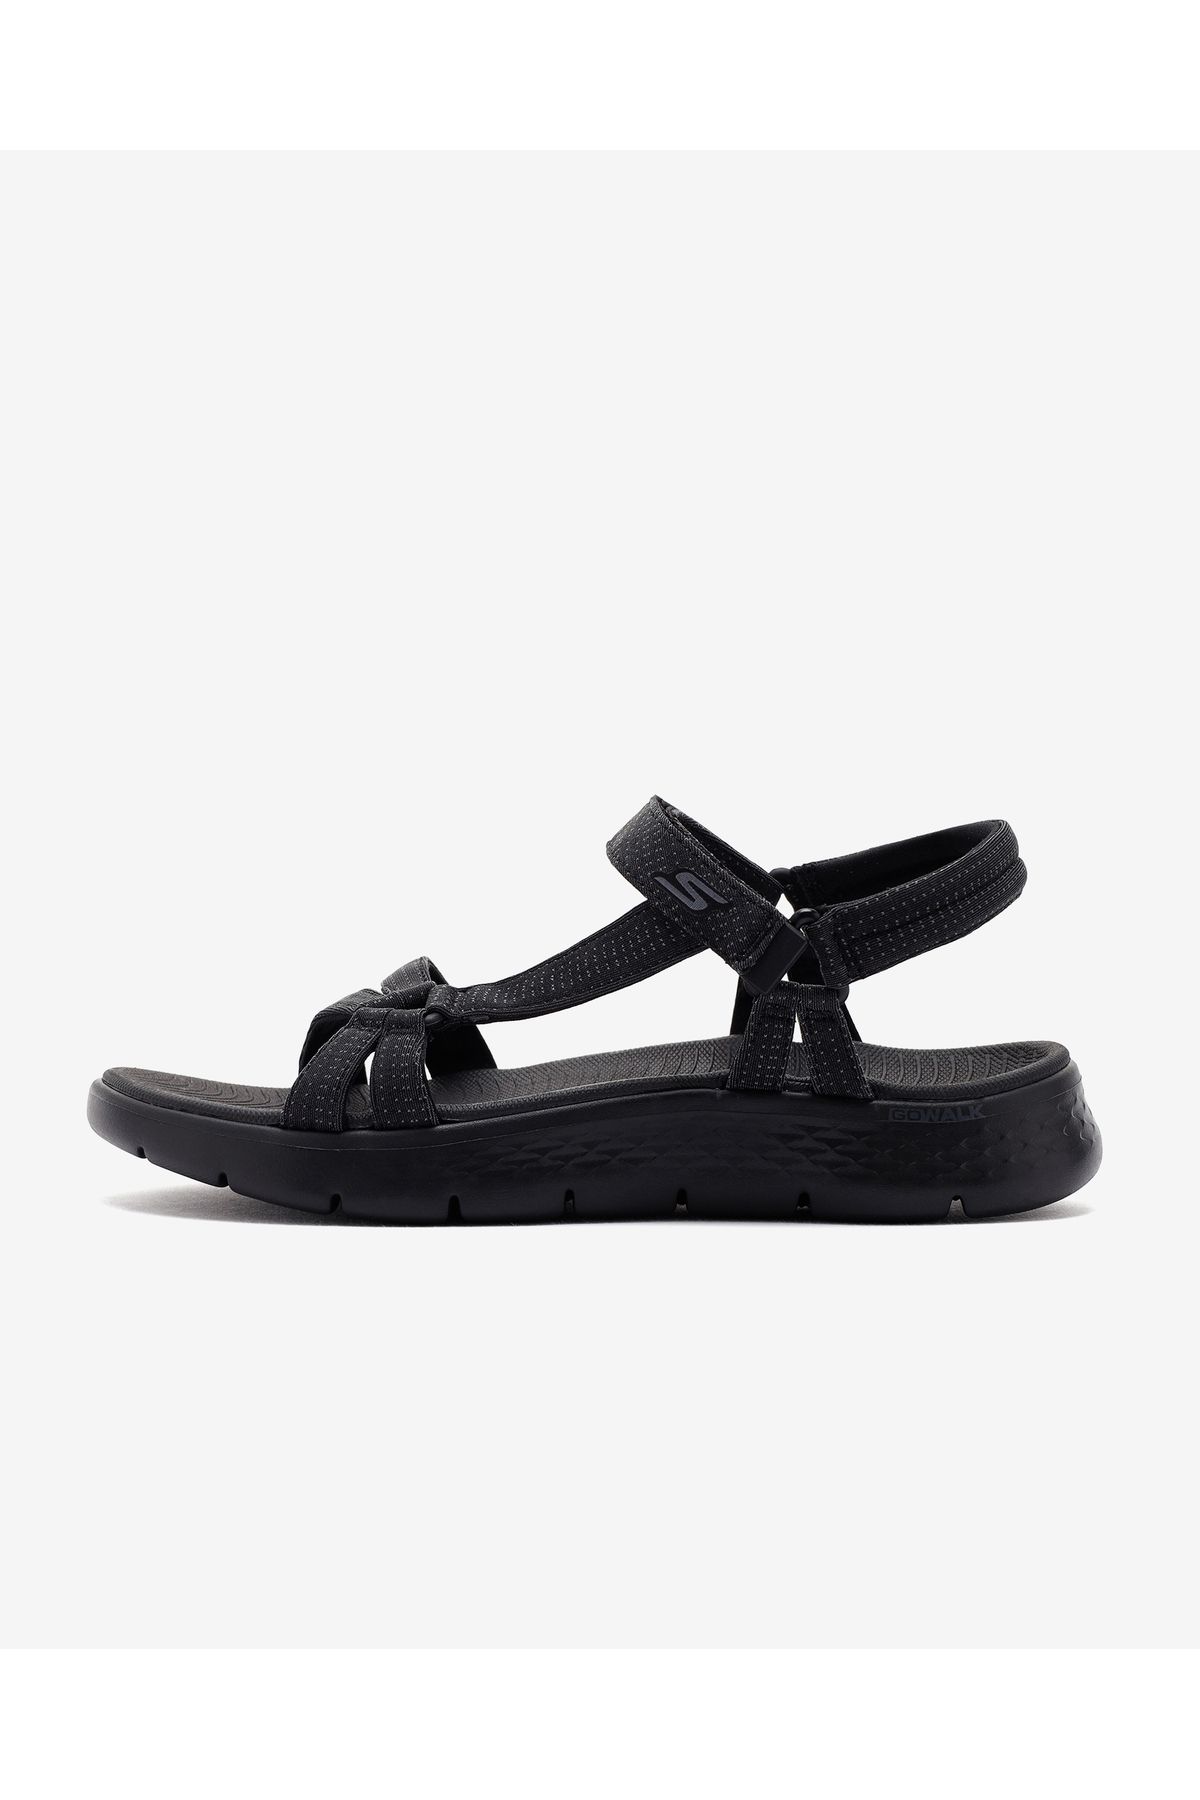 Skechers Go Walk Flex Sandal  -  Sublime Kadın Siyah Sandalet 141451 Bbk